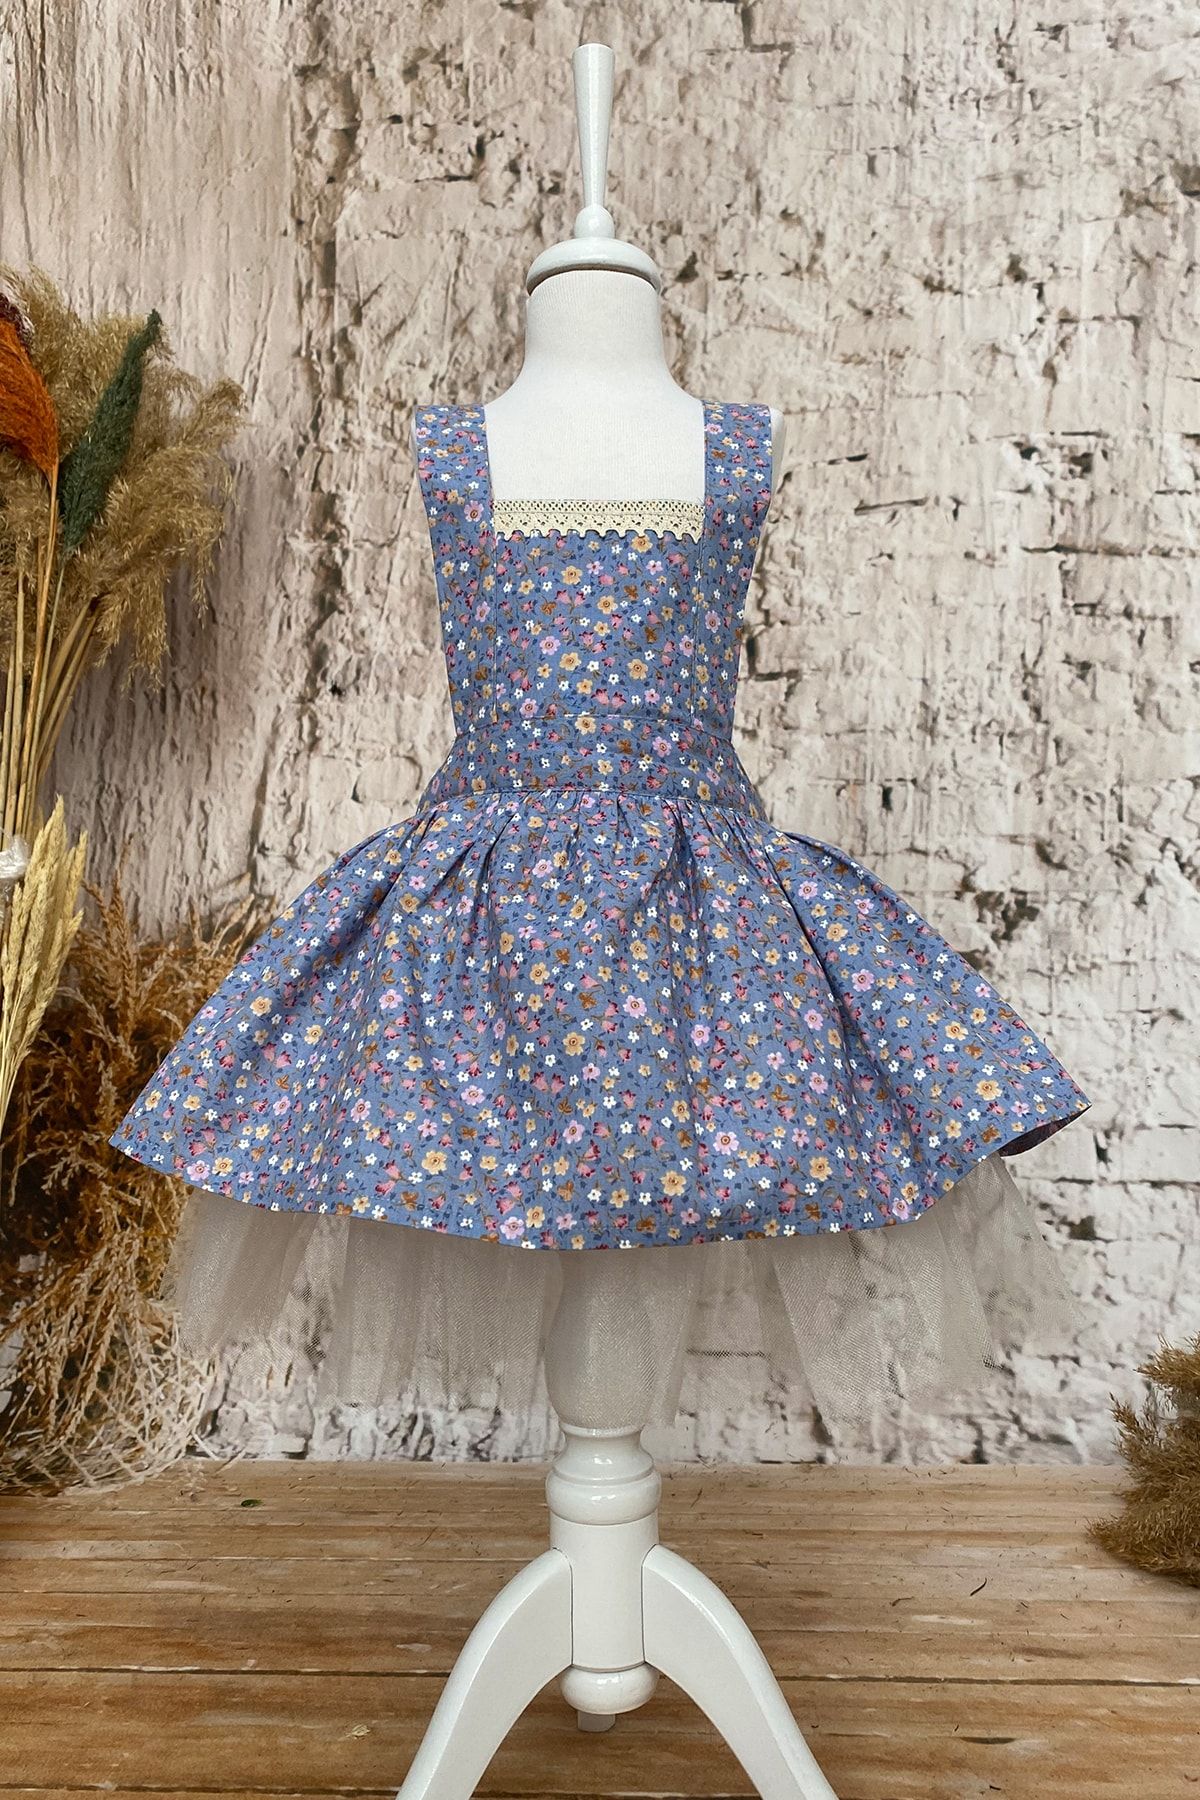 Shecco Babba Kız Çocuk Mavi Çiçekli Tütü Elbise, Doğum Günü Elbisesi, Kız Çocuk Elbise Modelleri 1-4 Yaş